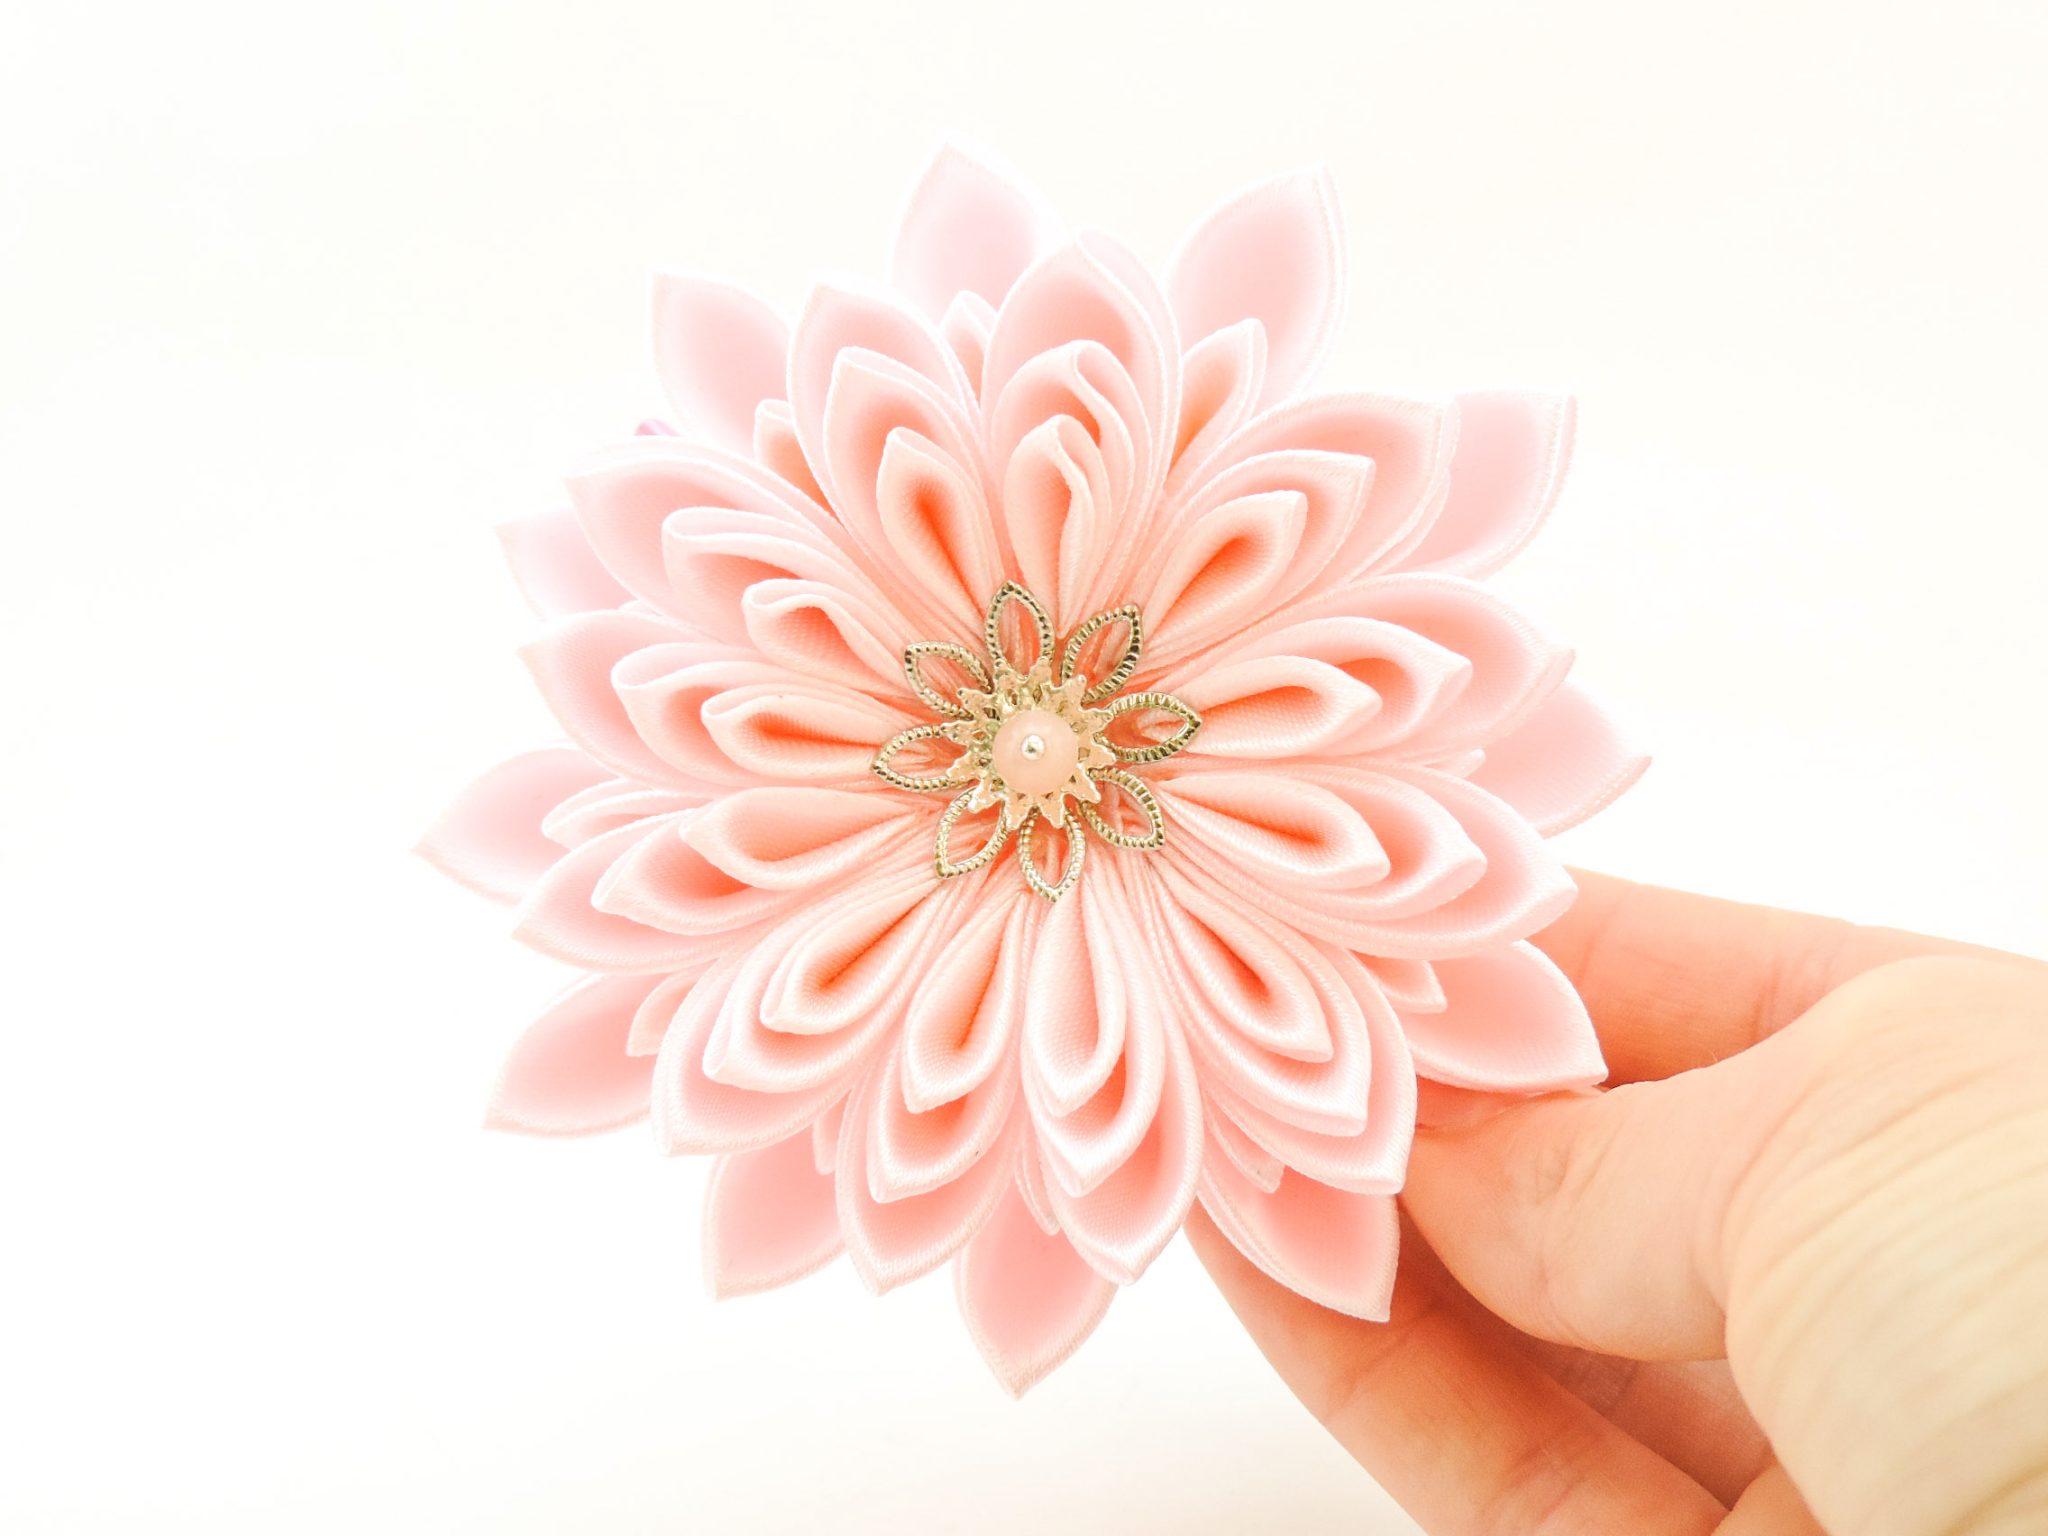 Pink satin chrysanthemum - DIY tutorial